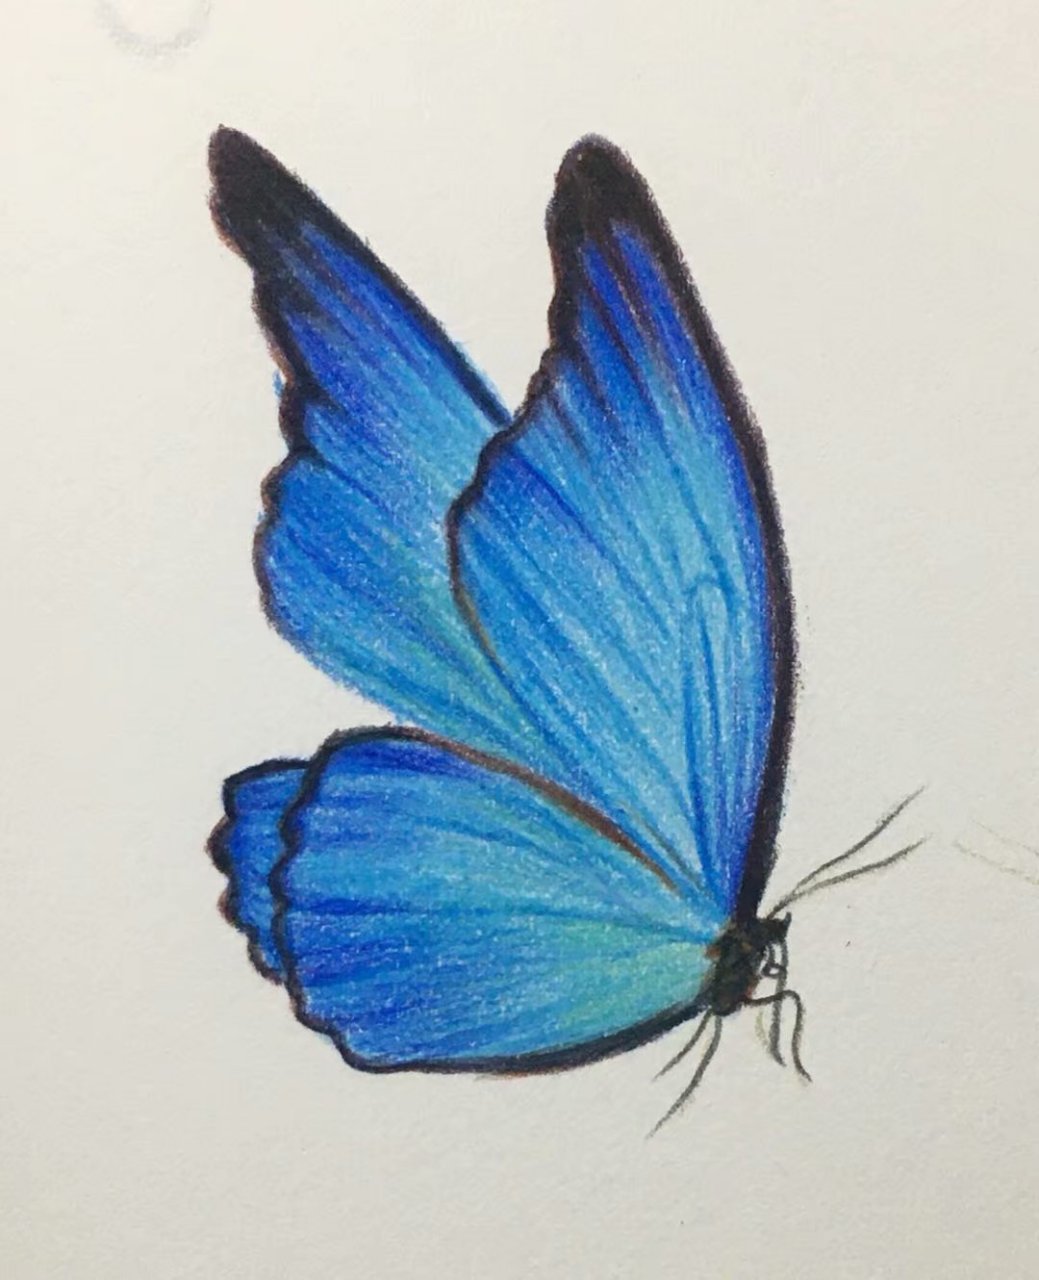 彩铅画简单又好看的蓝色蝴蝶03,含过程图哦 视频教程在前面的笔记